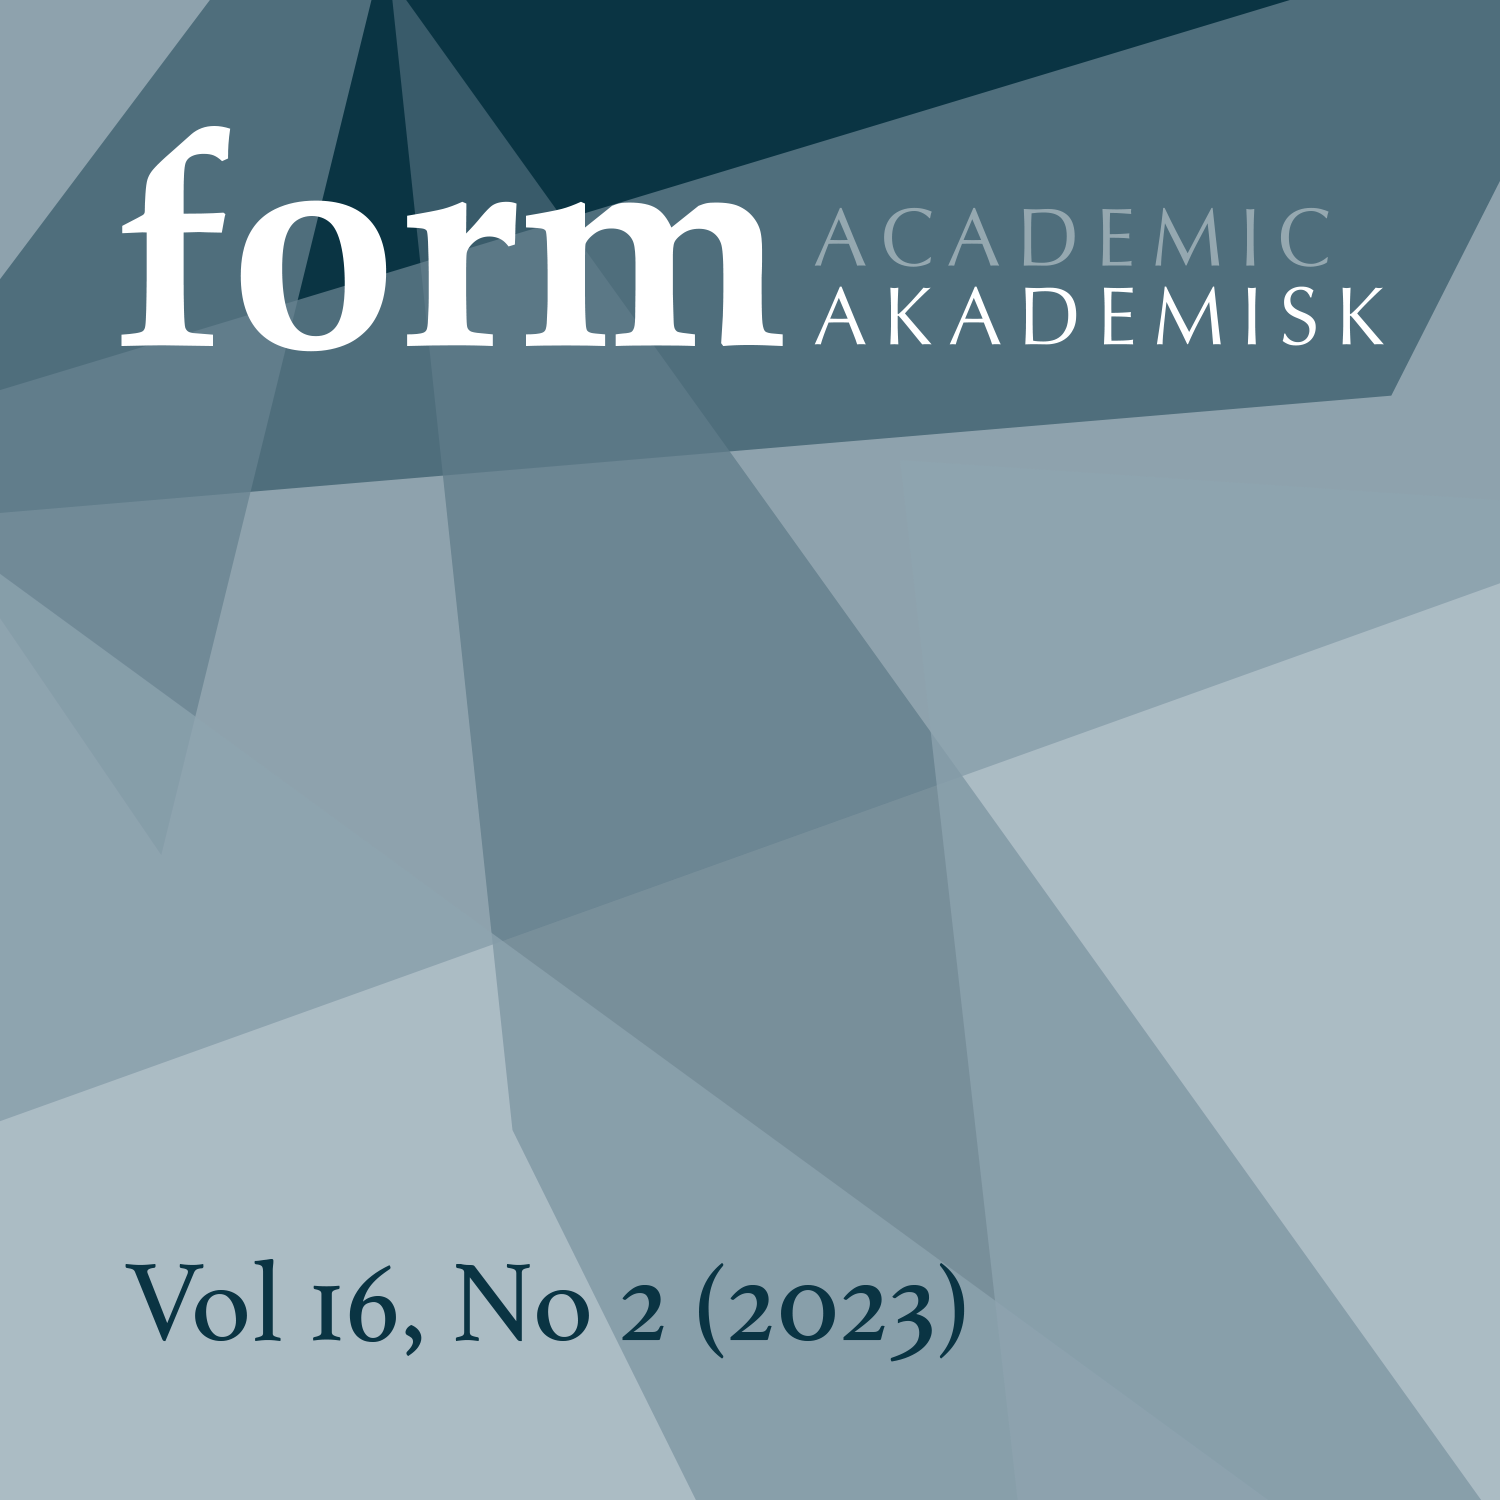 					Se Vol 16 Nr. 2 (2023): Fortid, nåtid og framtid - lærerutdanning i formgiving, kunst og håndverk 
				